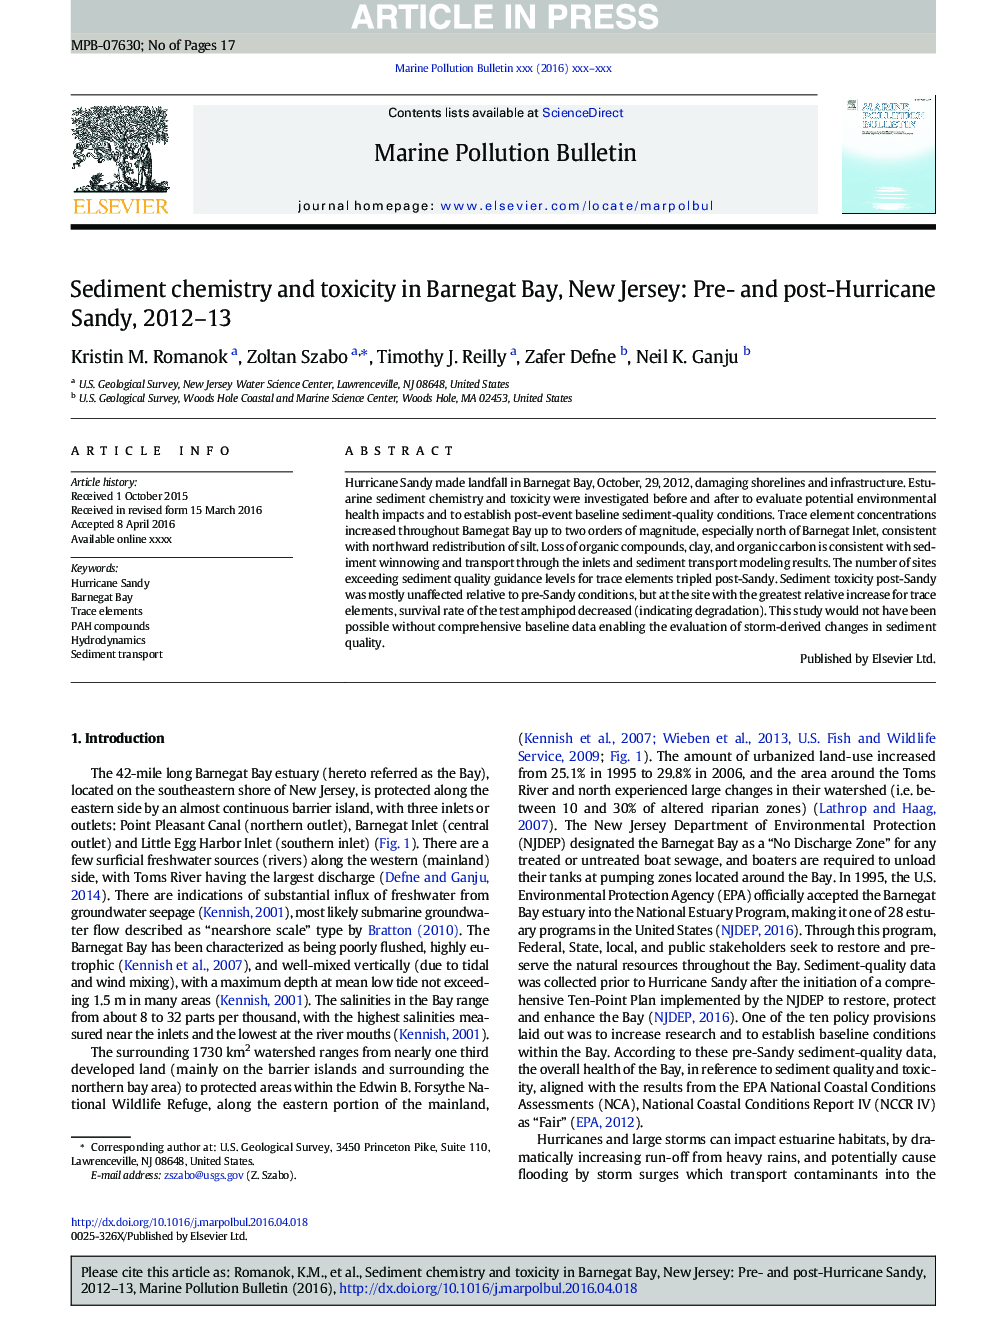 شیمی درمانی و سمیت در خلیج بارنات، نیوجرسی: پیش از و پس از طوفان شنی، 2012-13 